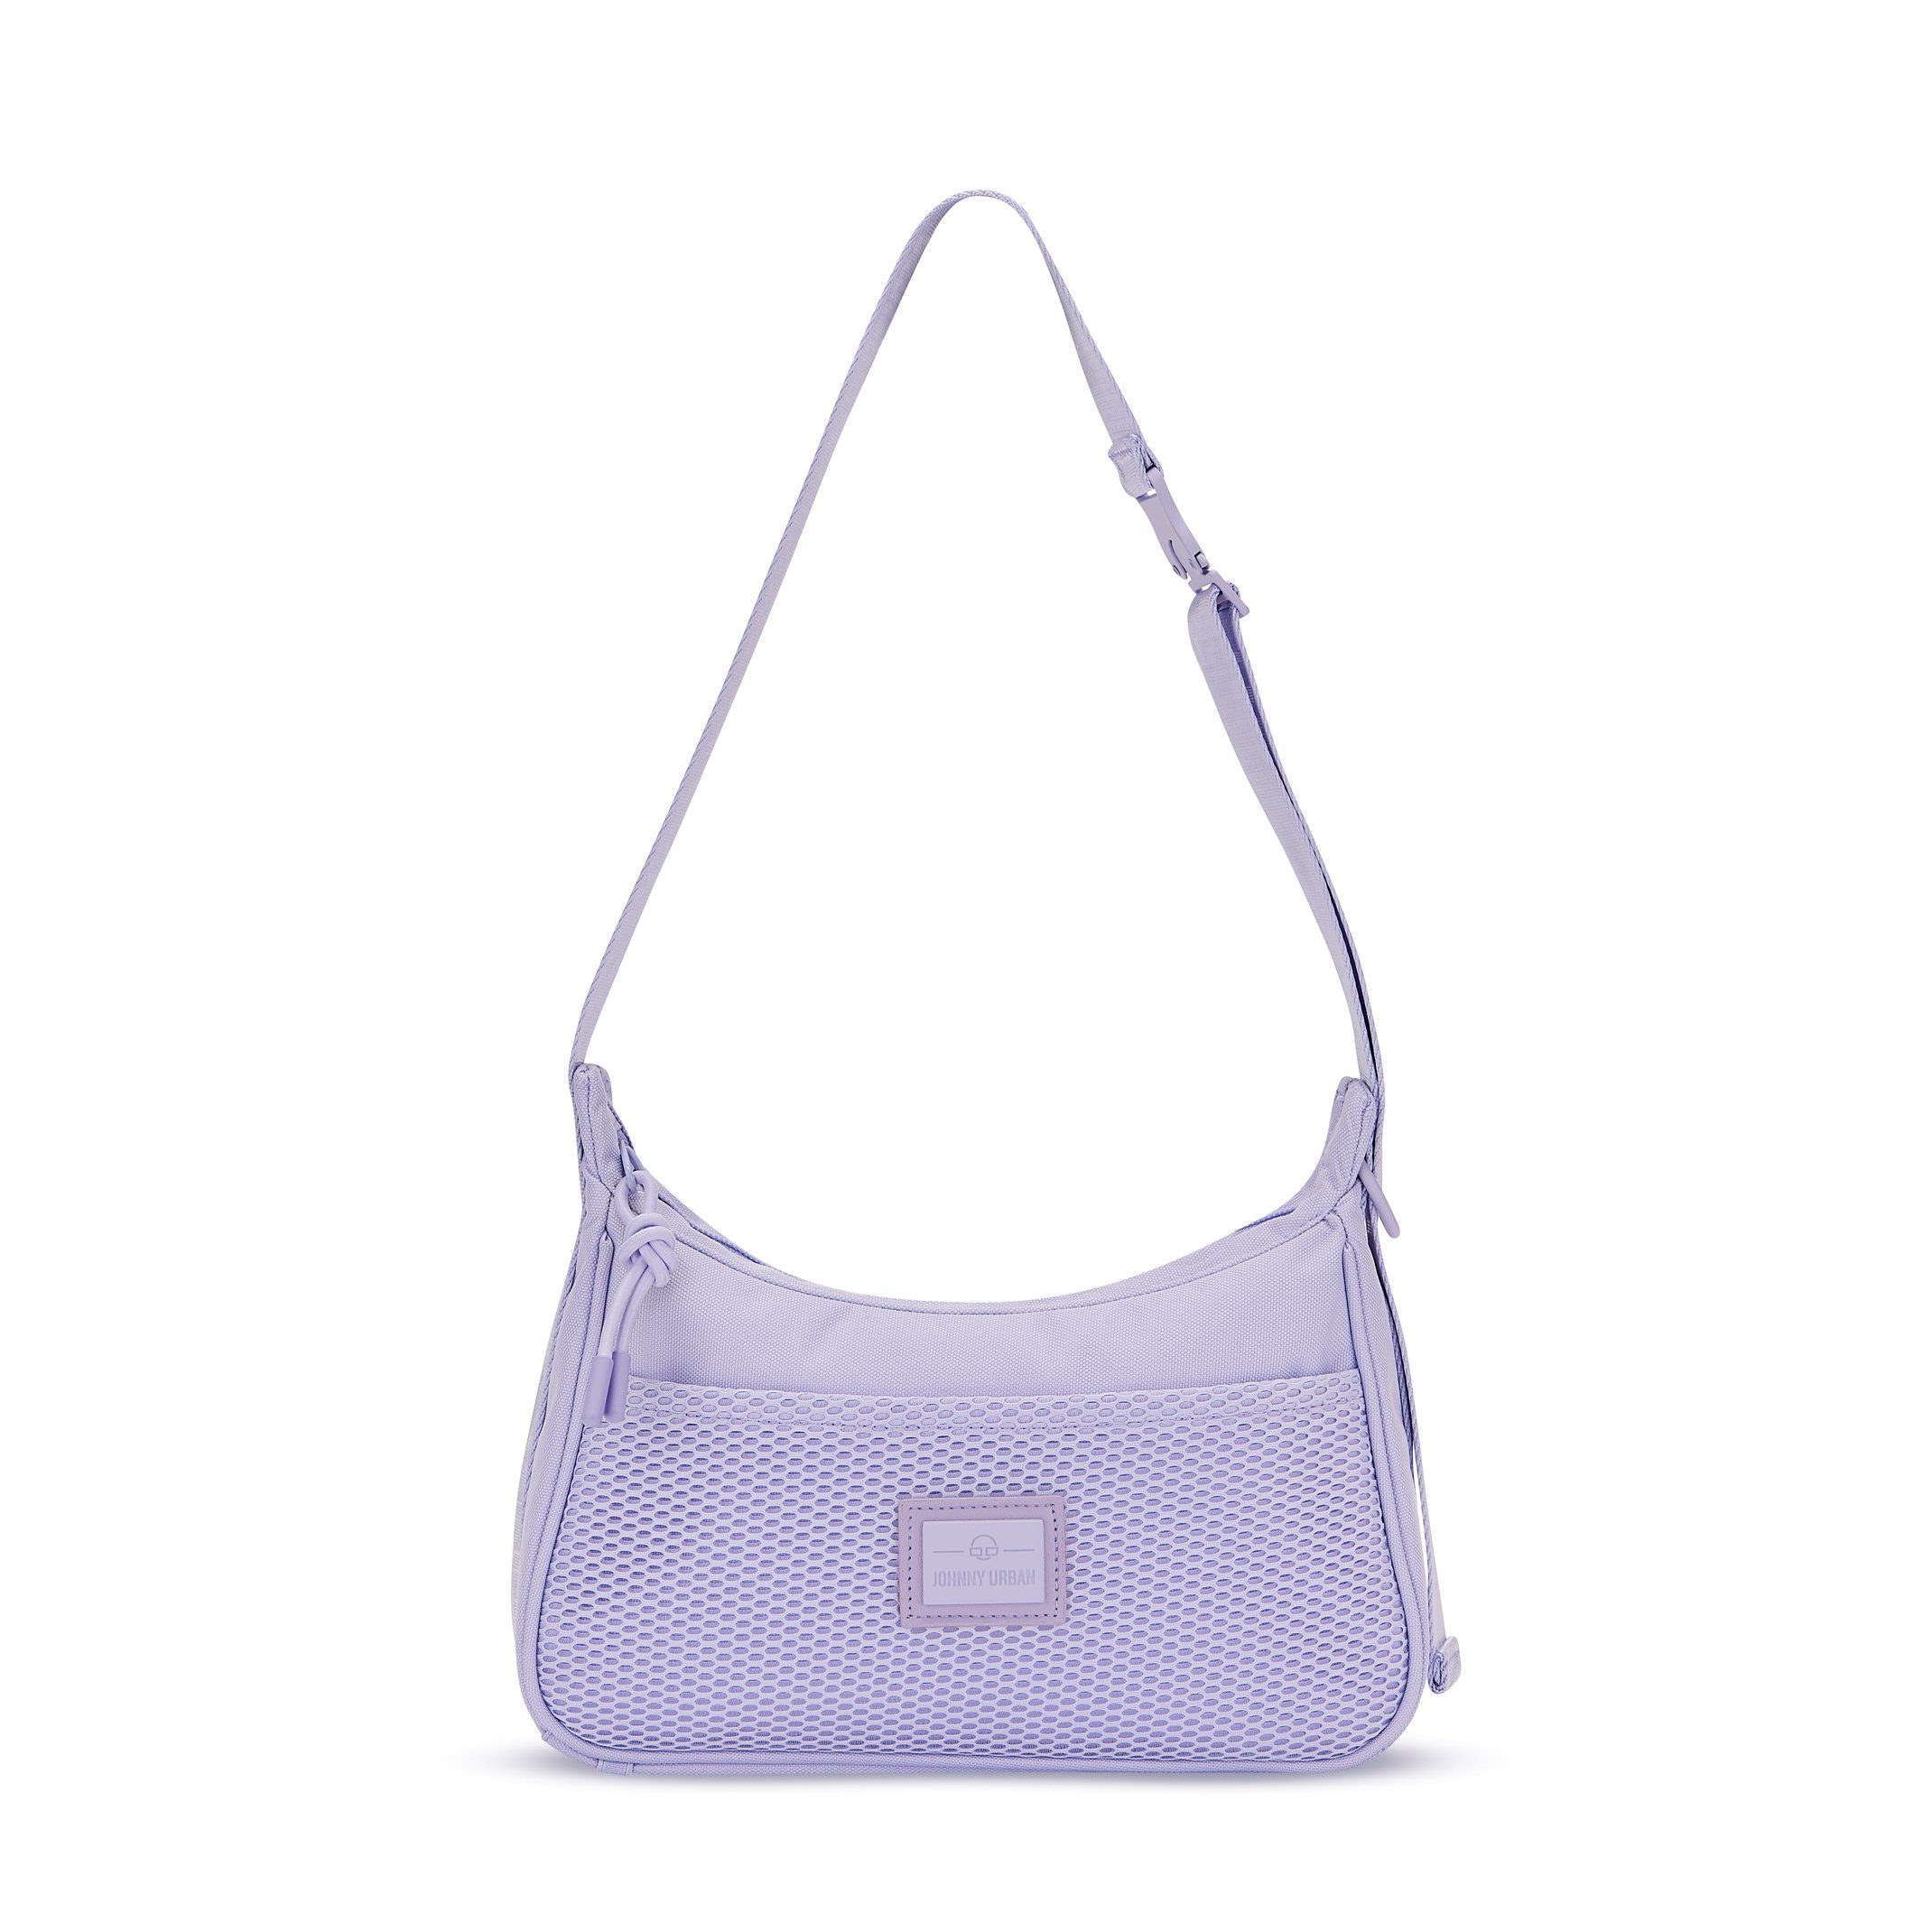 Johnny Urban Handtasche MADDY Handtasche Damen, Stylische Umhängetasche, Wasserabweisend Lilac